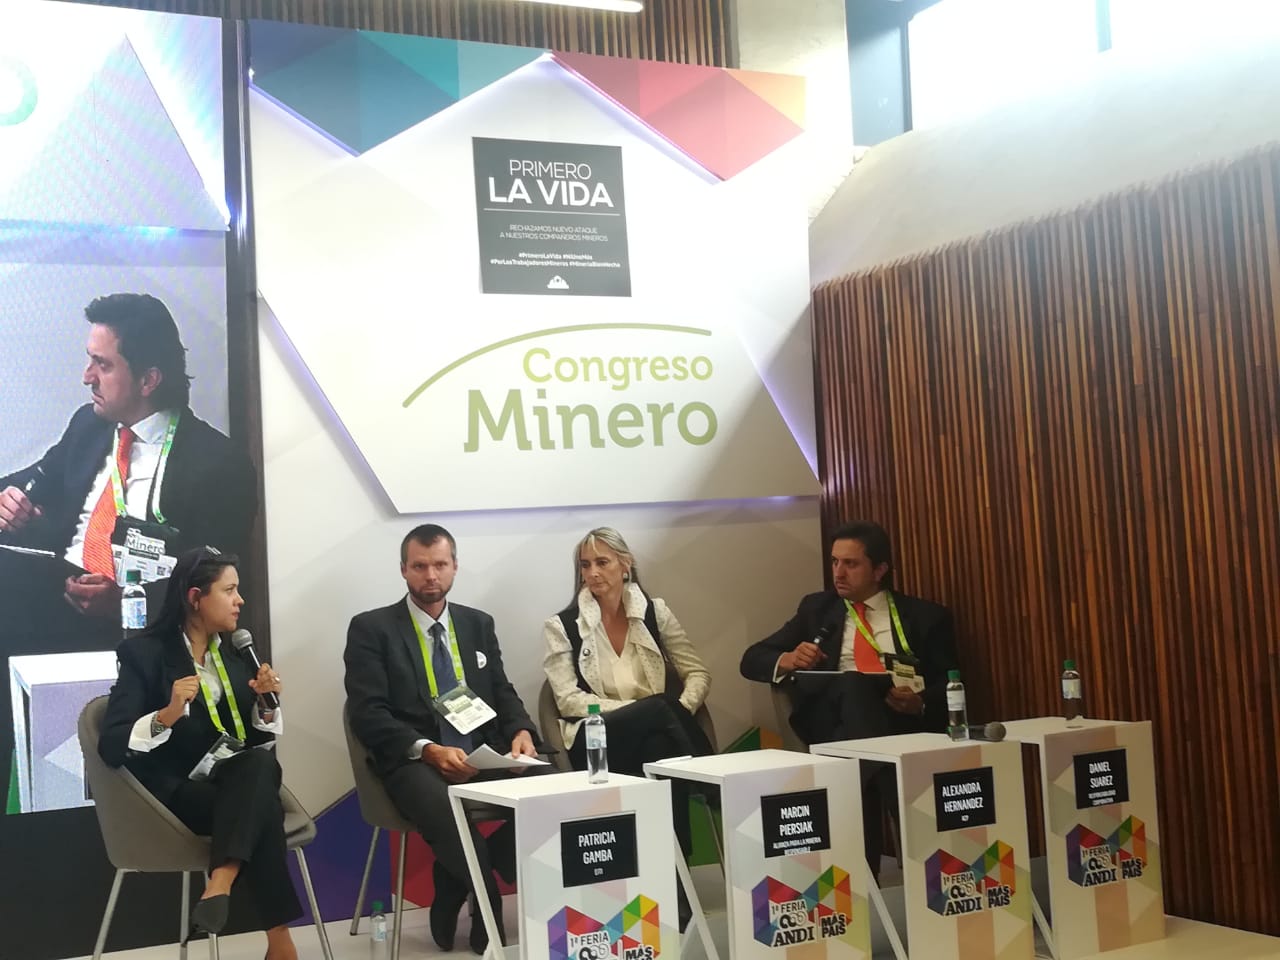 Congreso Minero